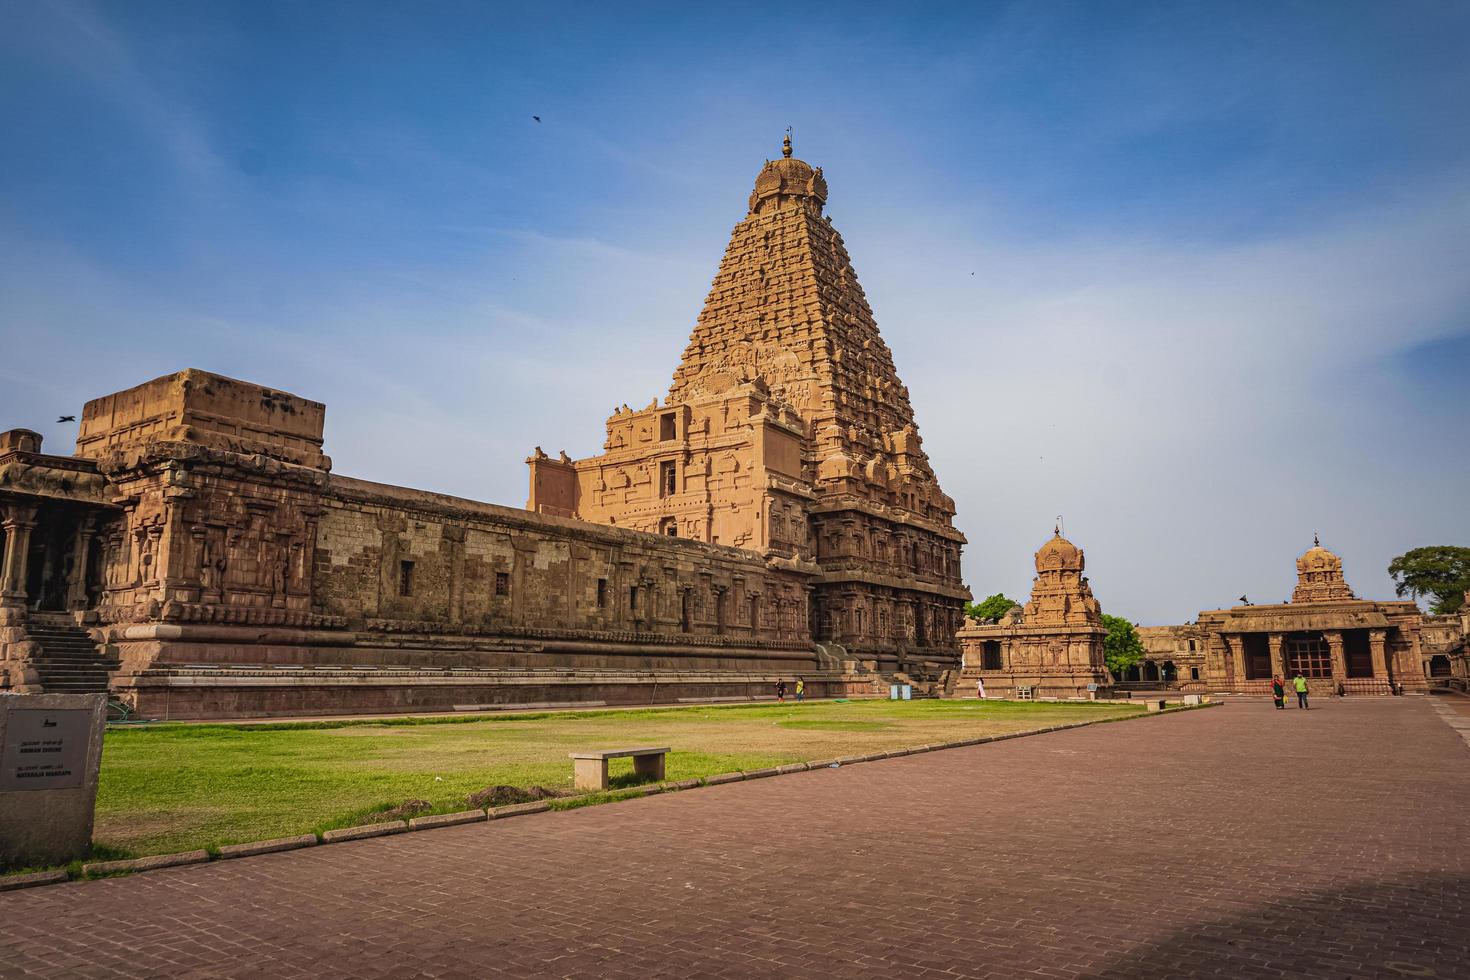 le grand temple de tanjore ou temple brihadeshwara a été construit par le roi raja raja cholan à thanjavur, tamil nadu. c'est le temple le plus ancien et le plus haut d'inde. ce temple inscrit au patrimoine de l'unesco photo